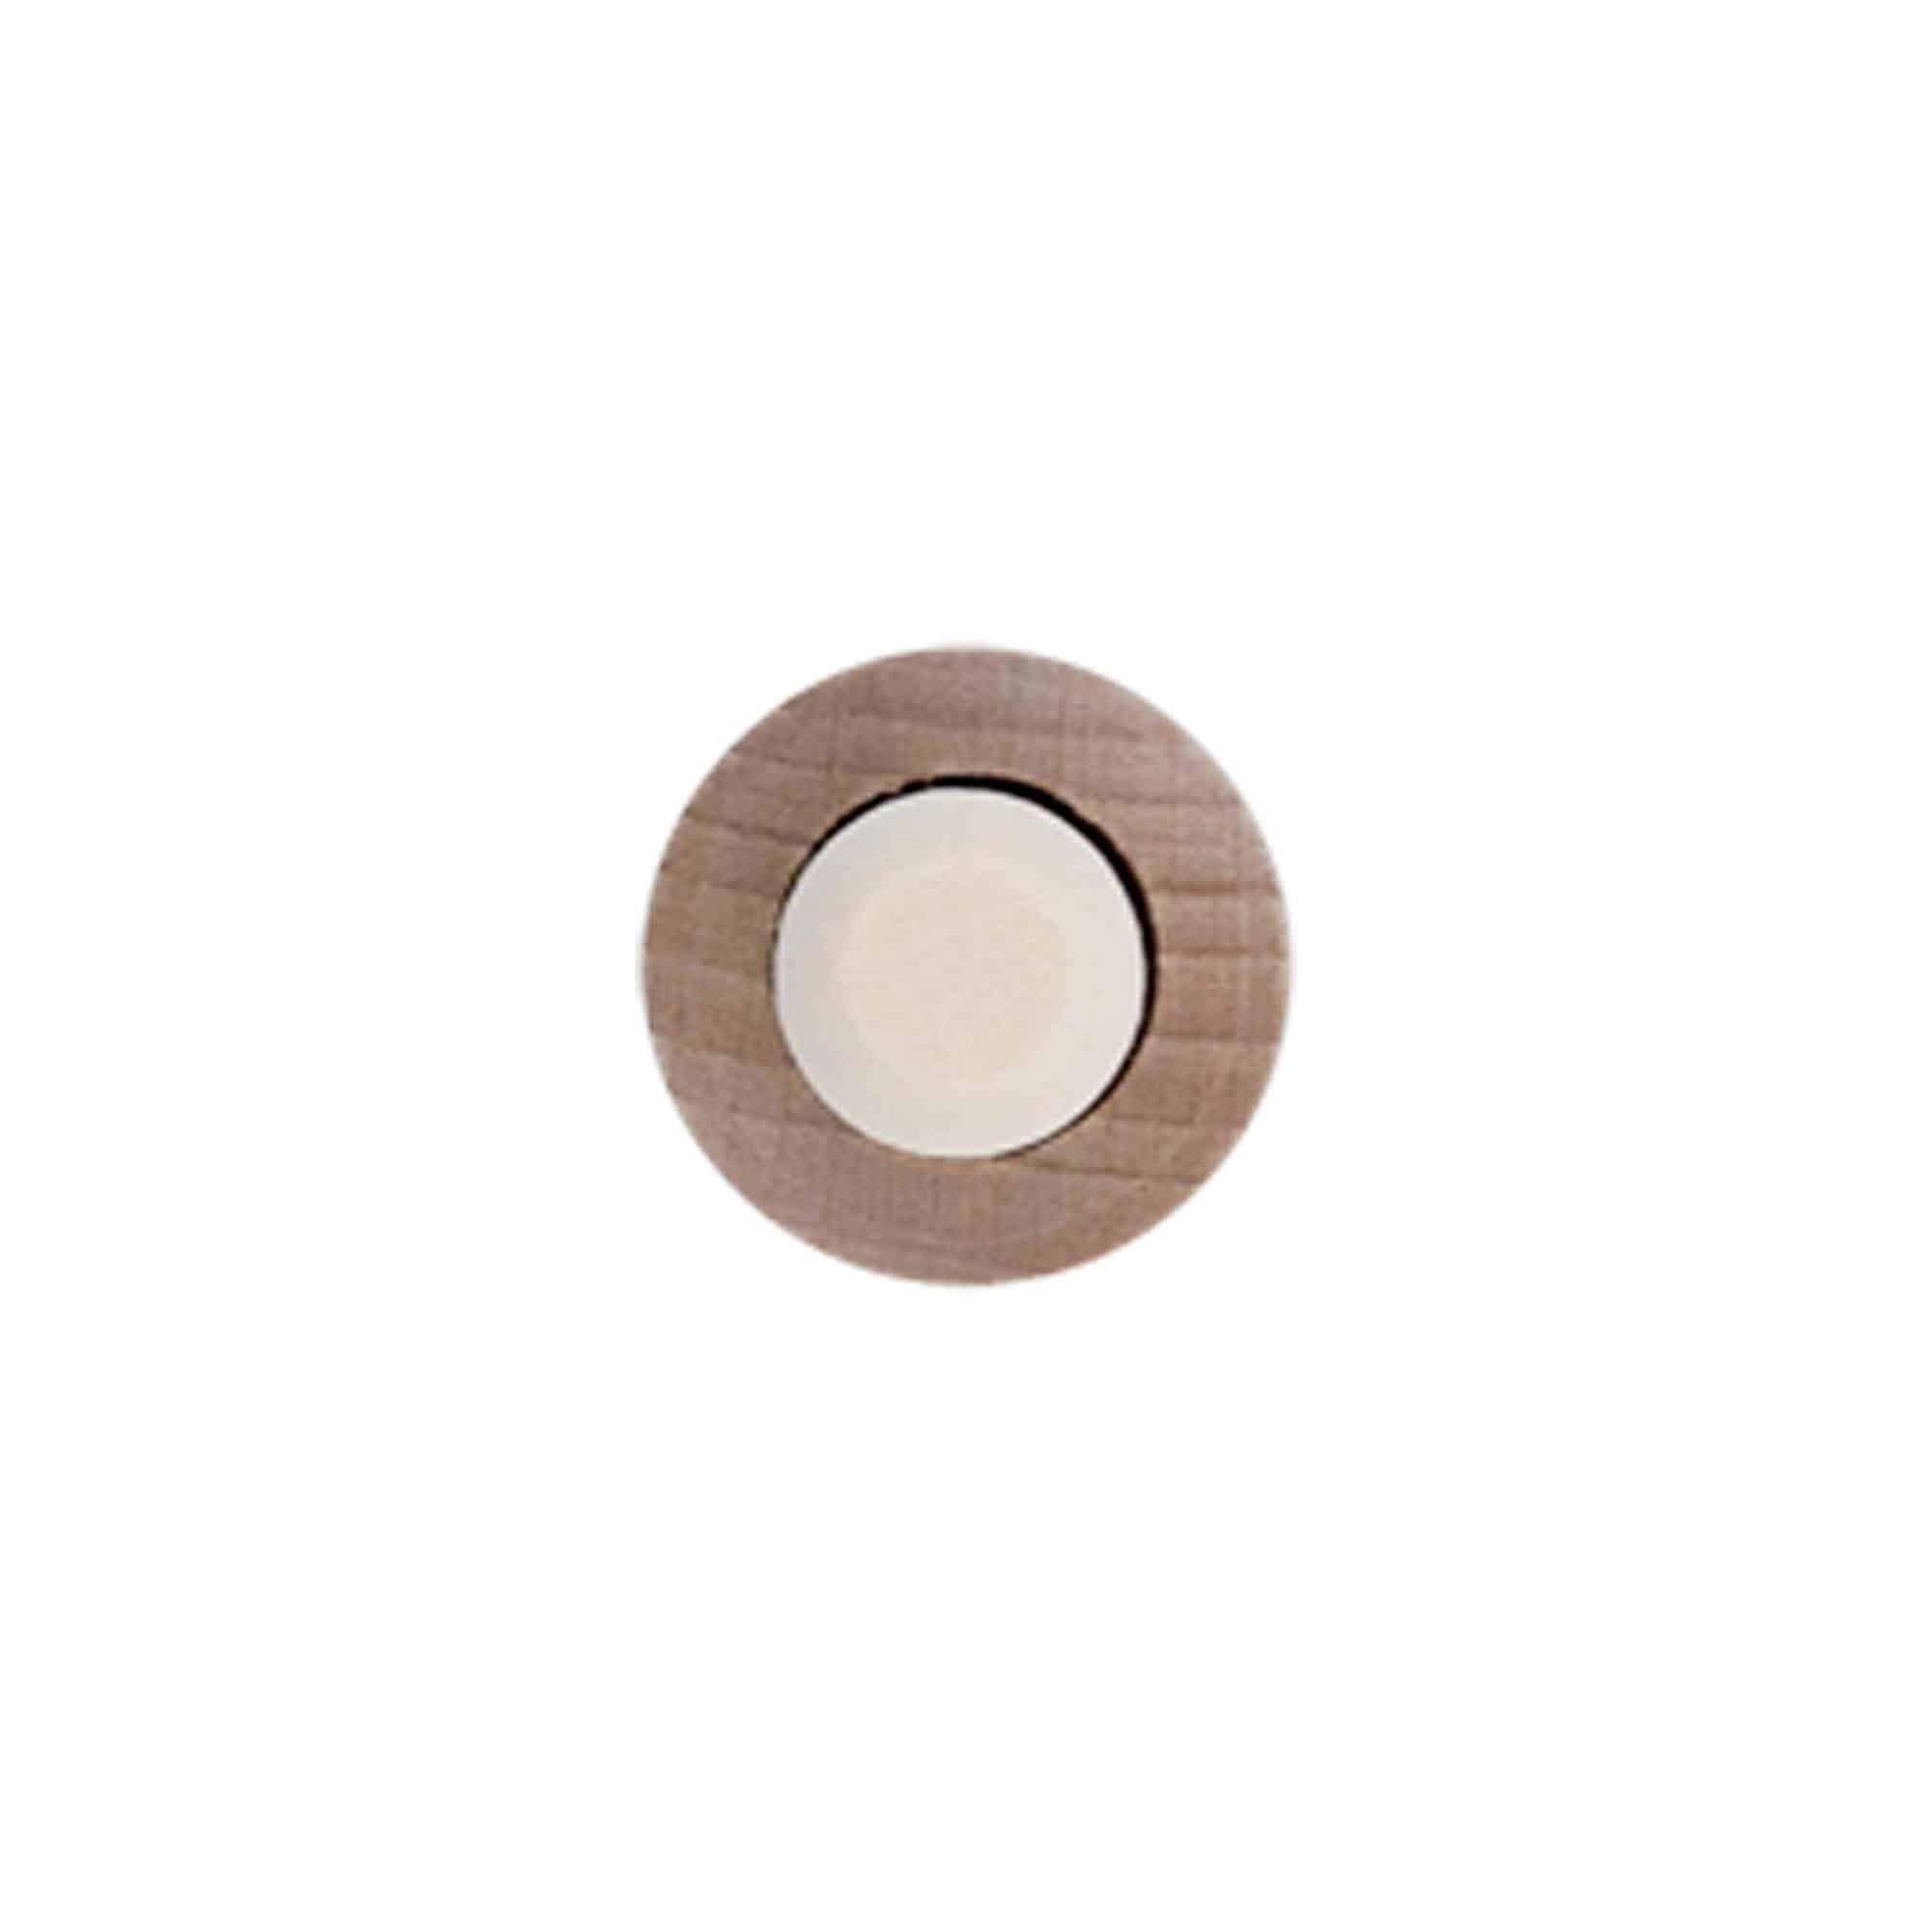 Dopkurk, 16 mm, hout, voor monding: kurk